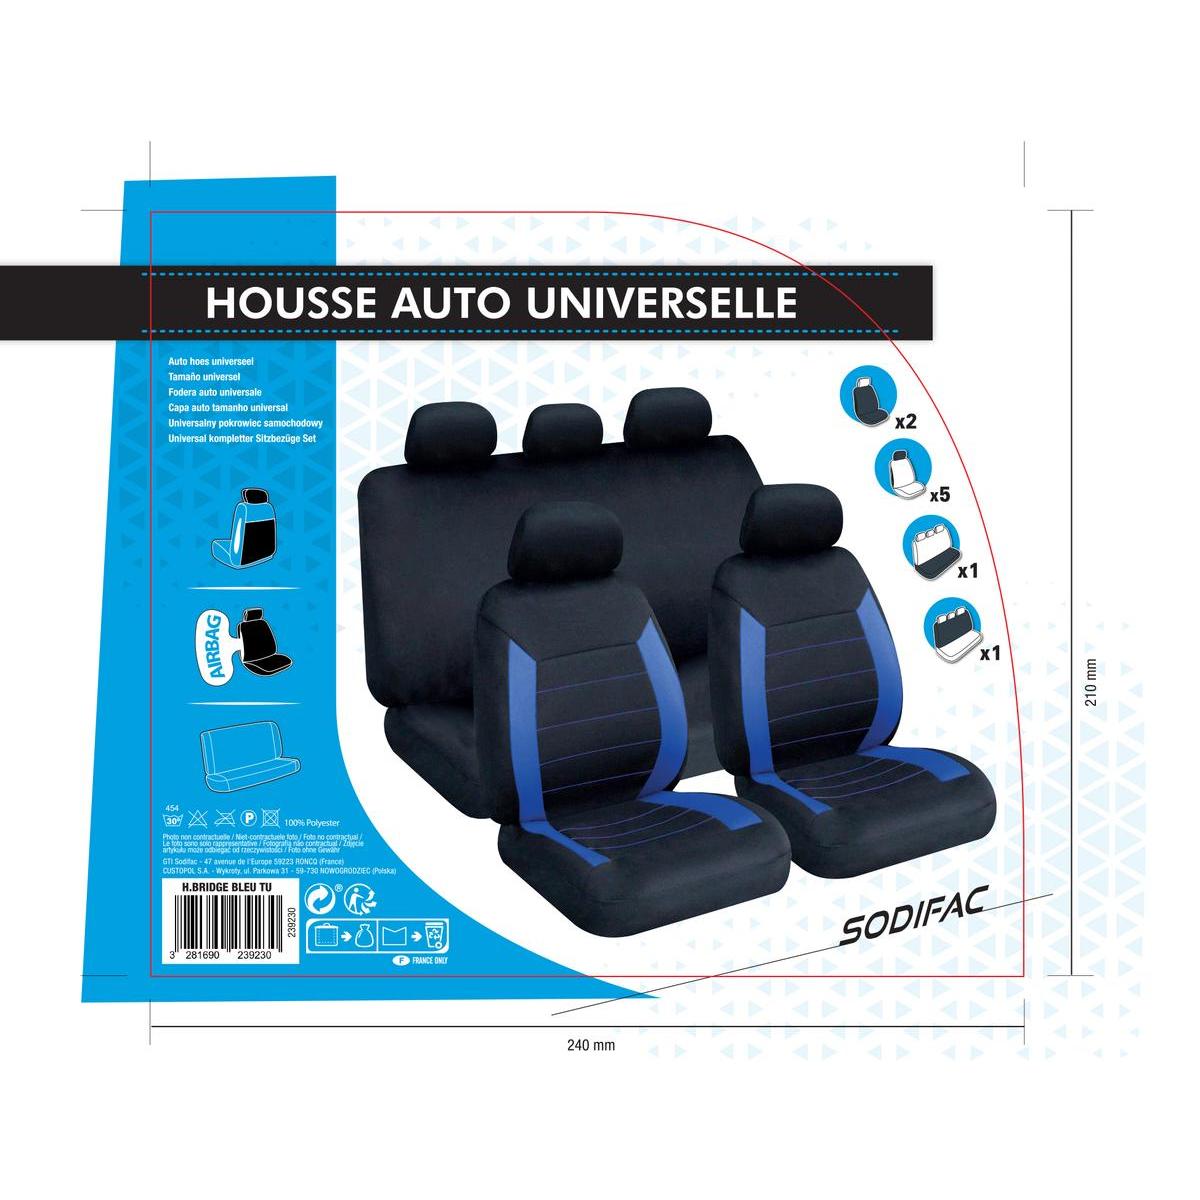 Les housses de siège pour voitures : la spécialité d'une entreprise  landaise - France Bleu